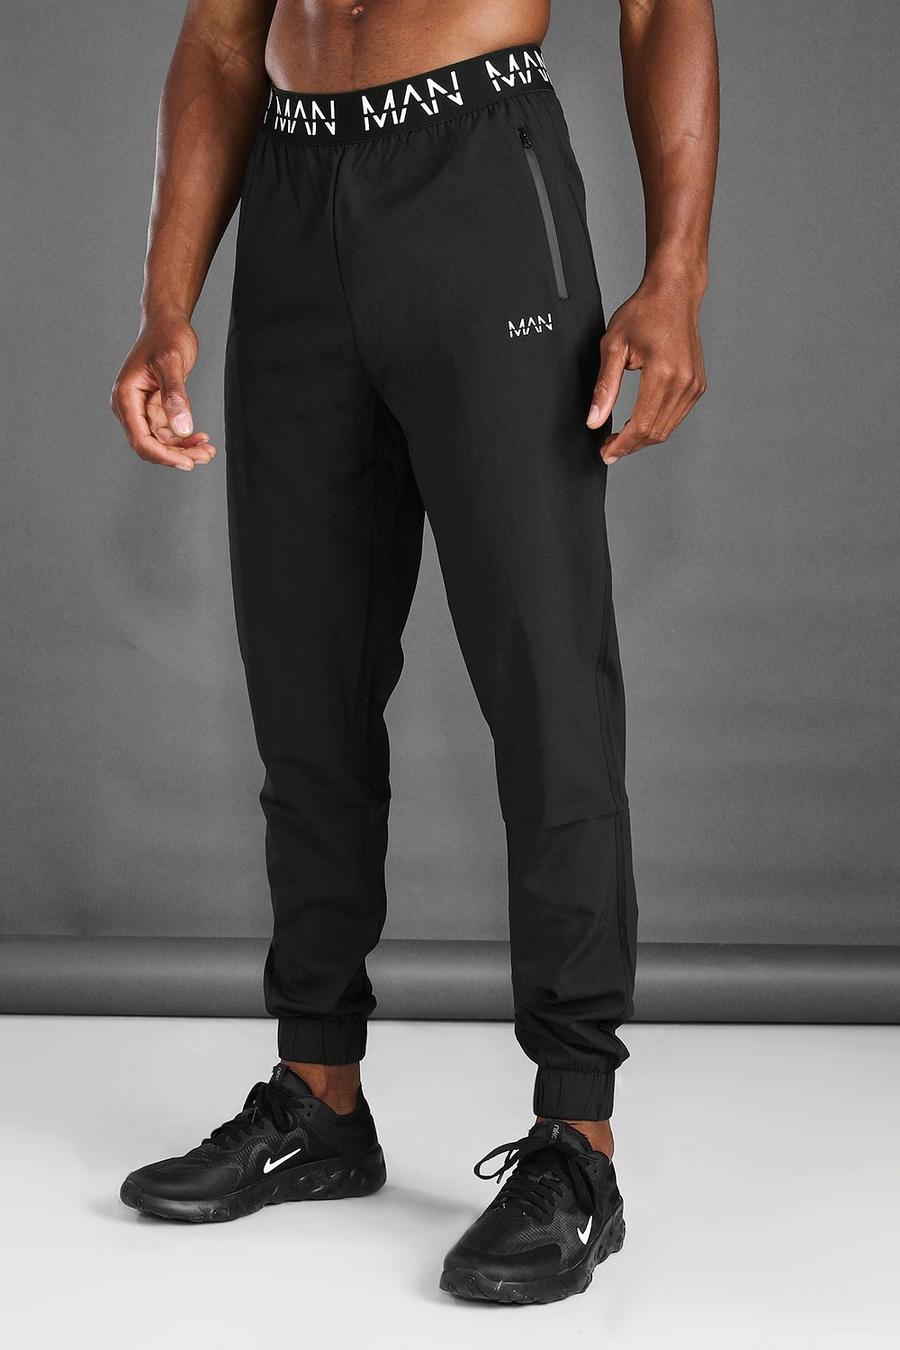 שחור negro מכנסי ריצה לאימונים בגזרת קרסול צרה עם חגורה של MAN